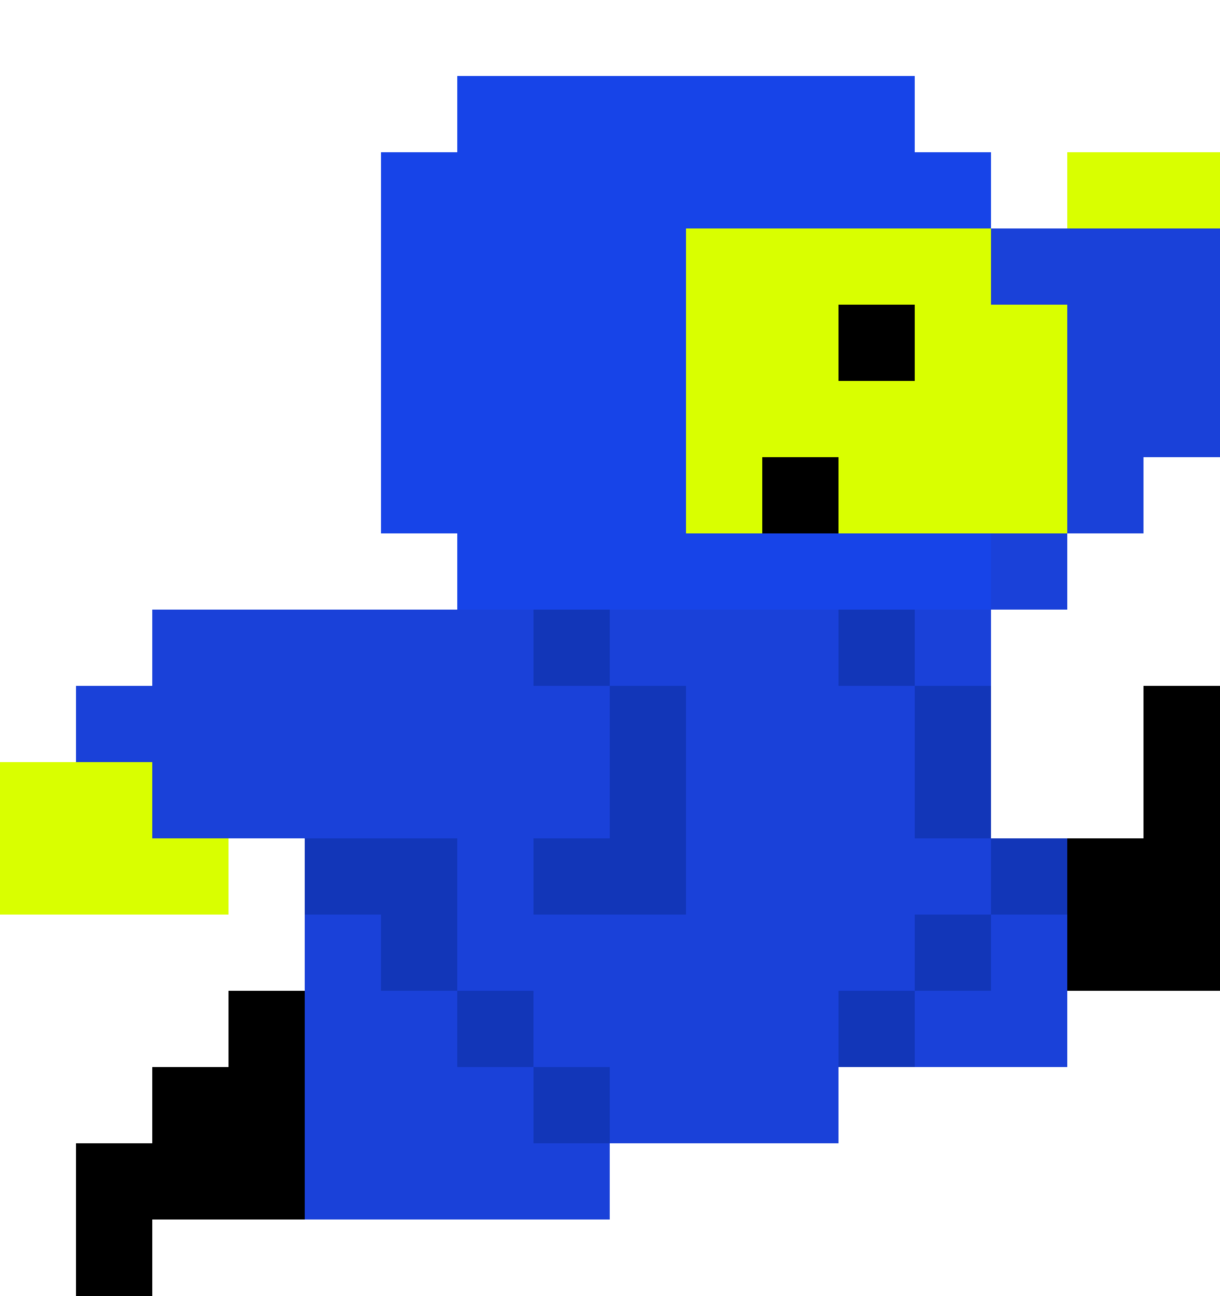 Blue 8 bit character for easter egg